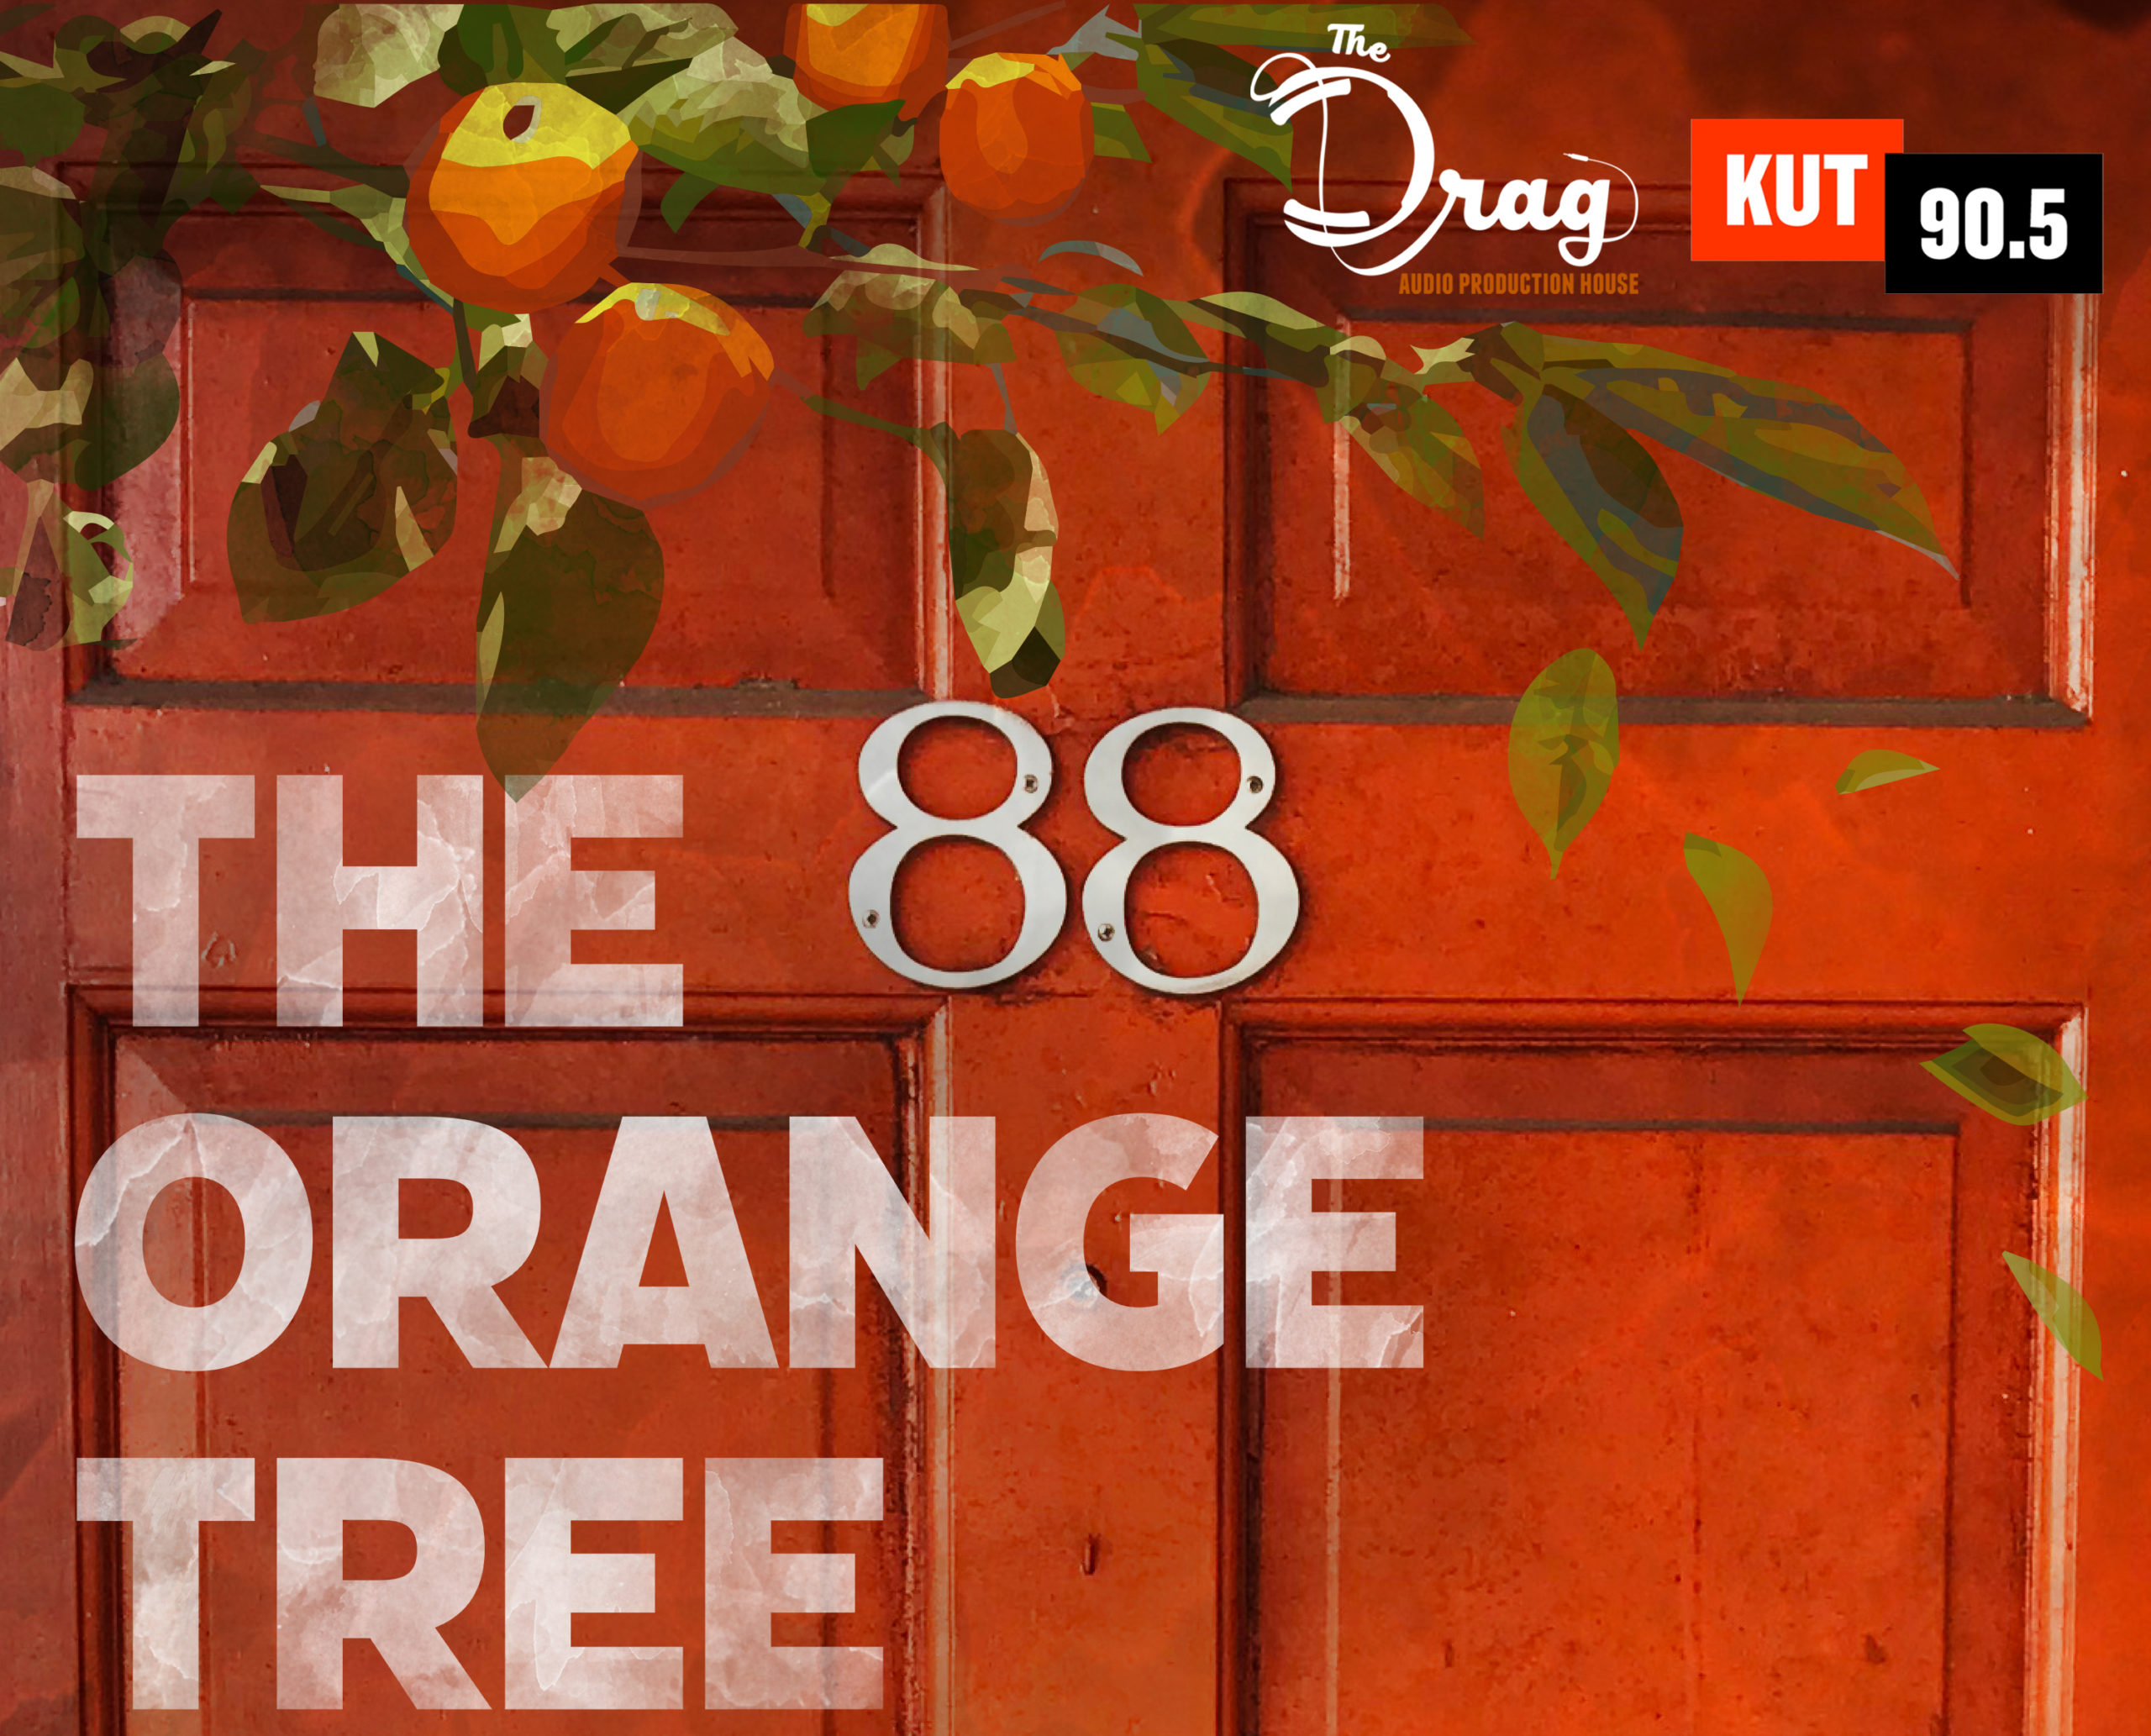 The Orange Tree - The Drag